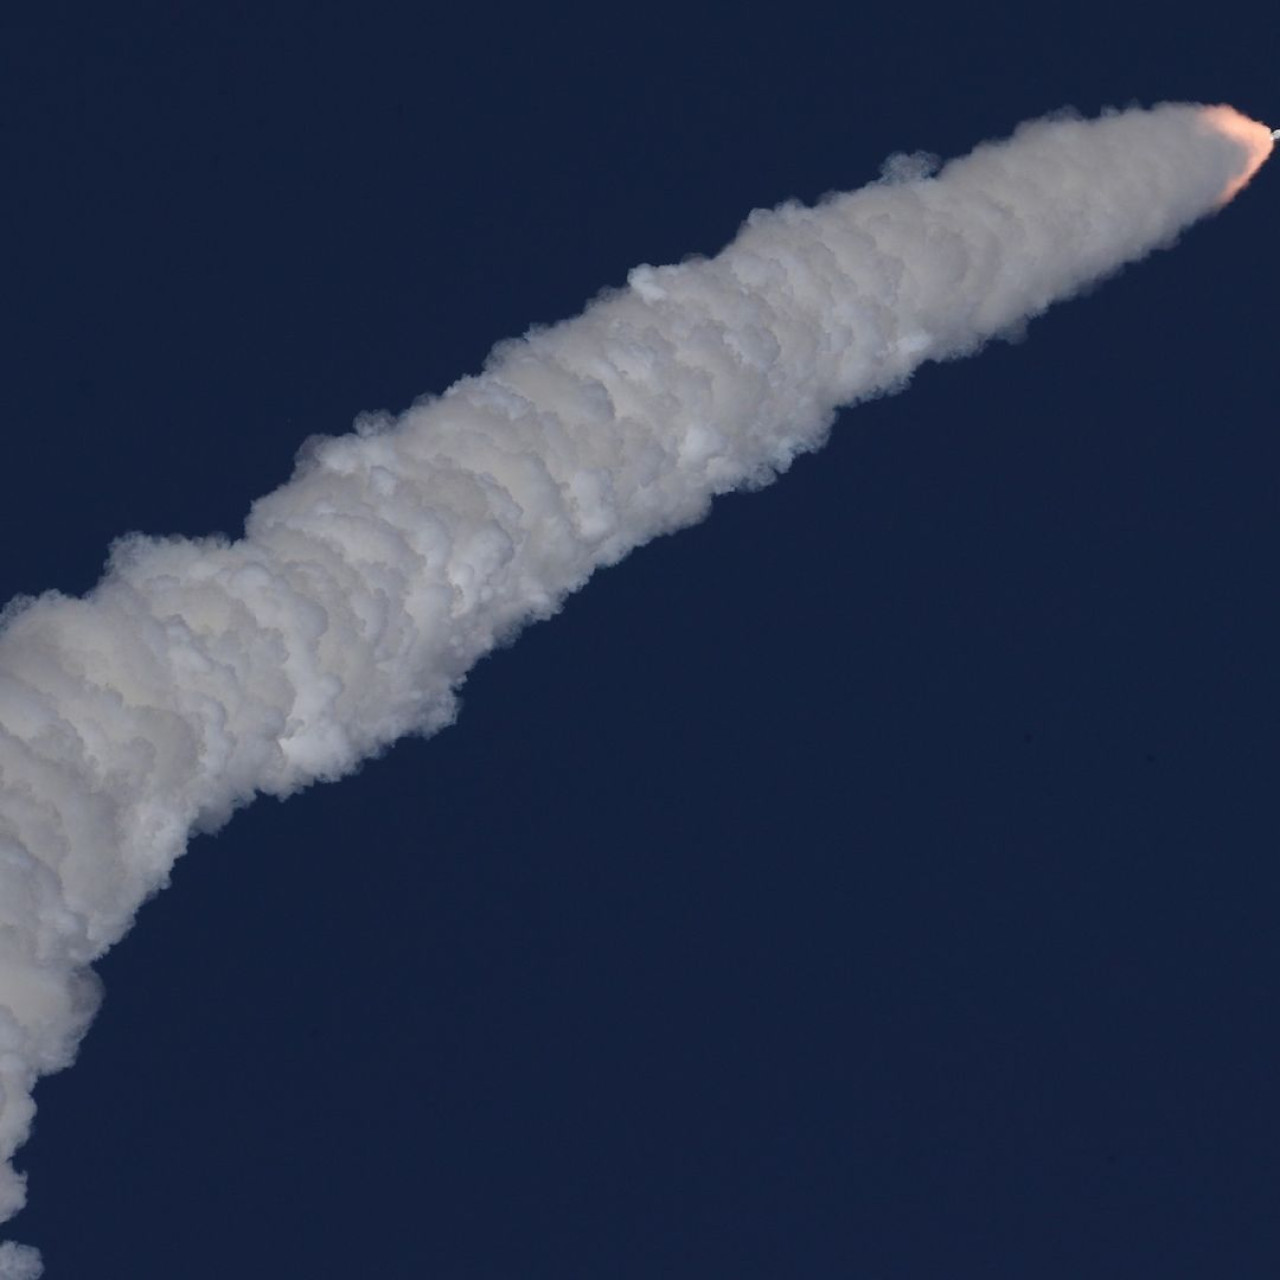 La India lanza al espacio con éxito su cohete INSAT-3DS. Foto: Instagram.